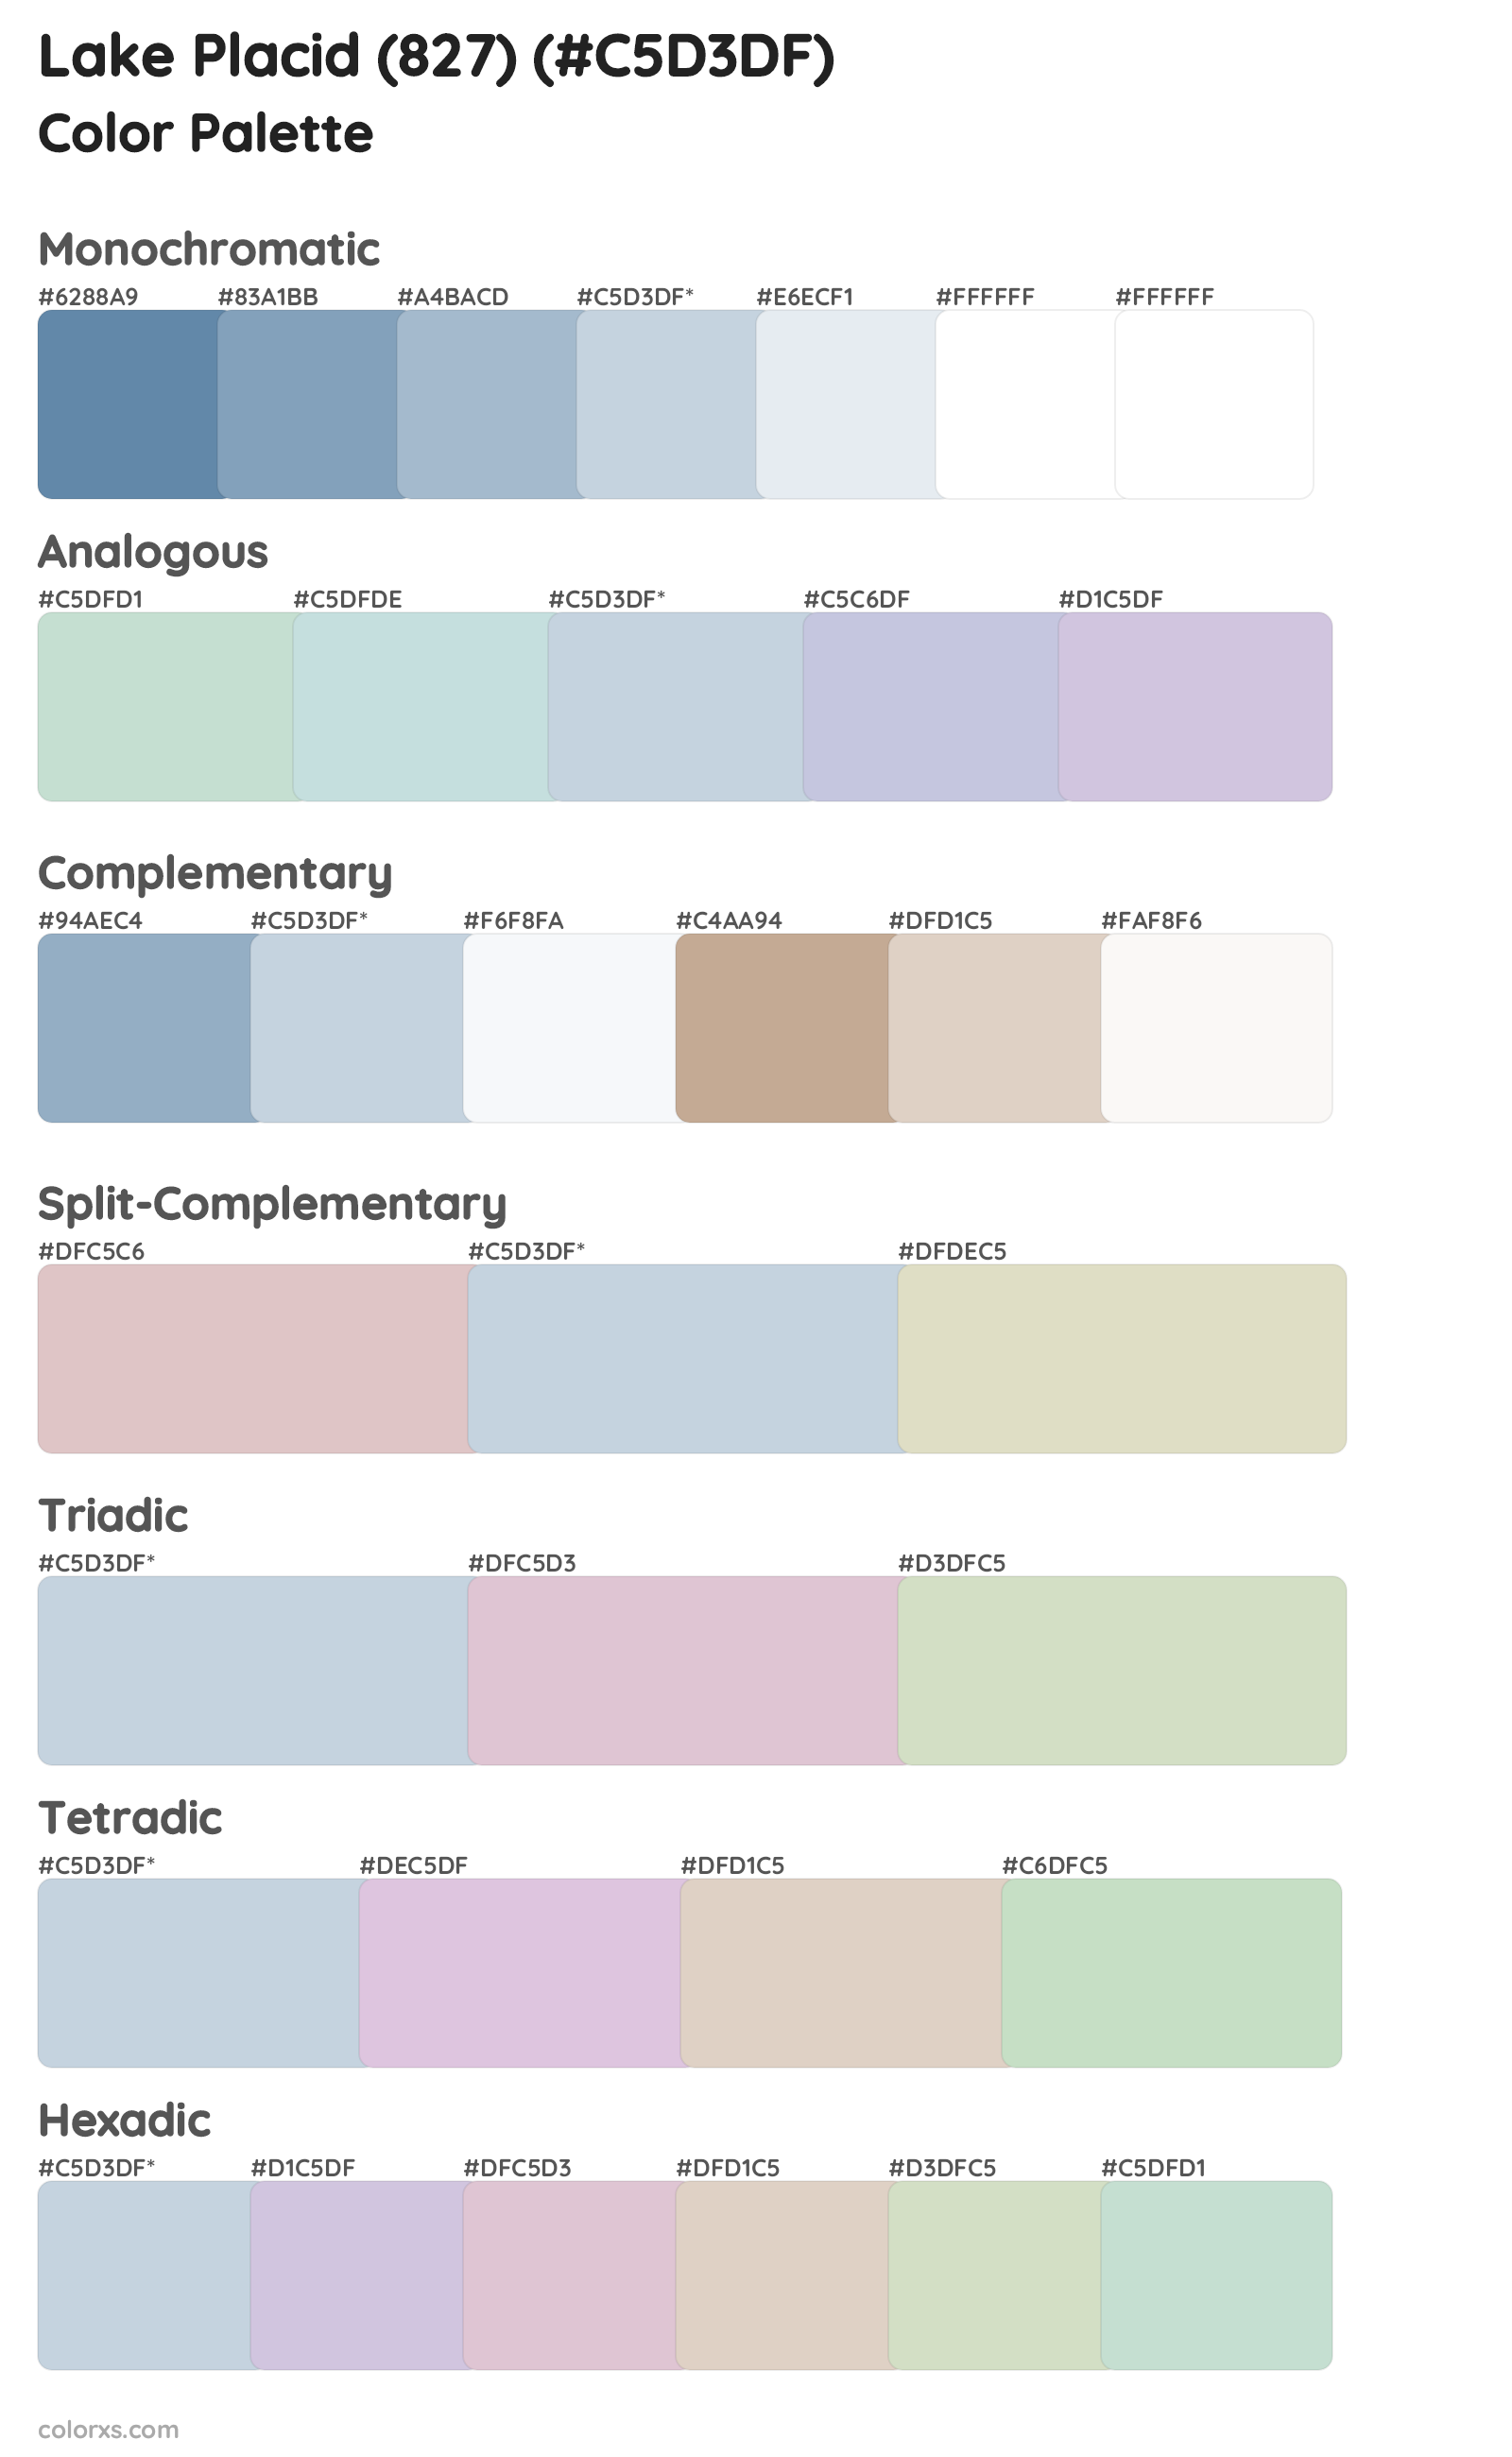 Lake Placid (827) Color Scheme Palettes